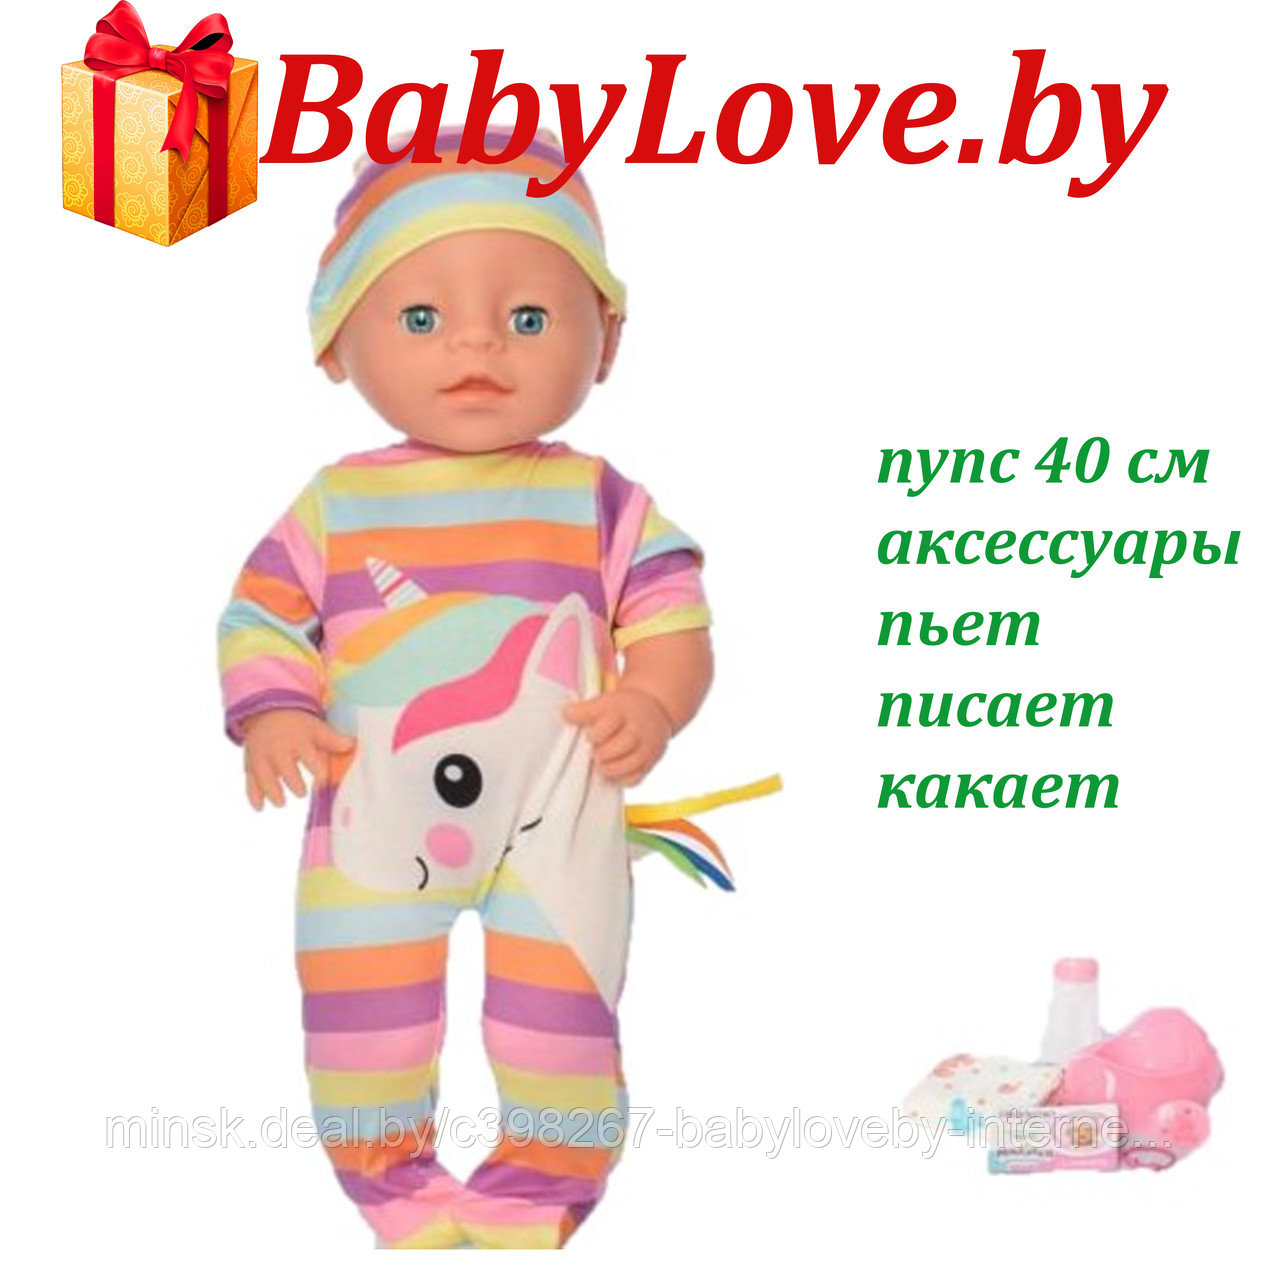 YL171019O Интерактивный пупс Yale Baby с аксессуарами, 40 см, пьет-писает-какает